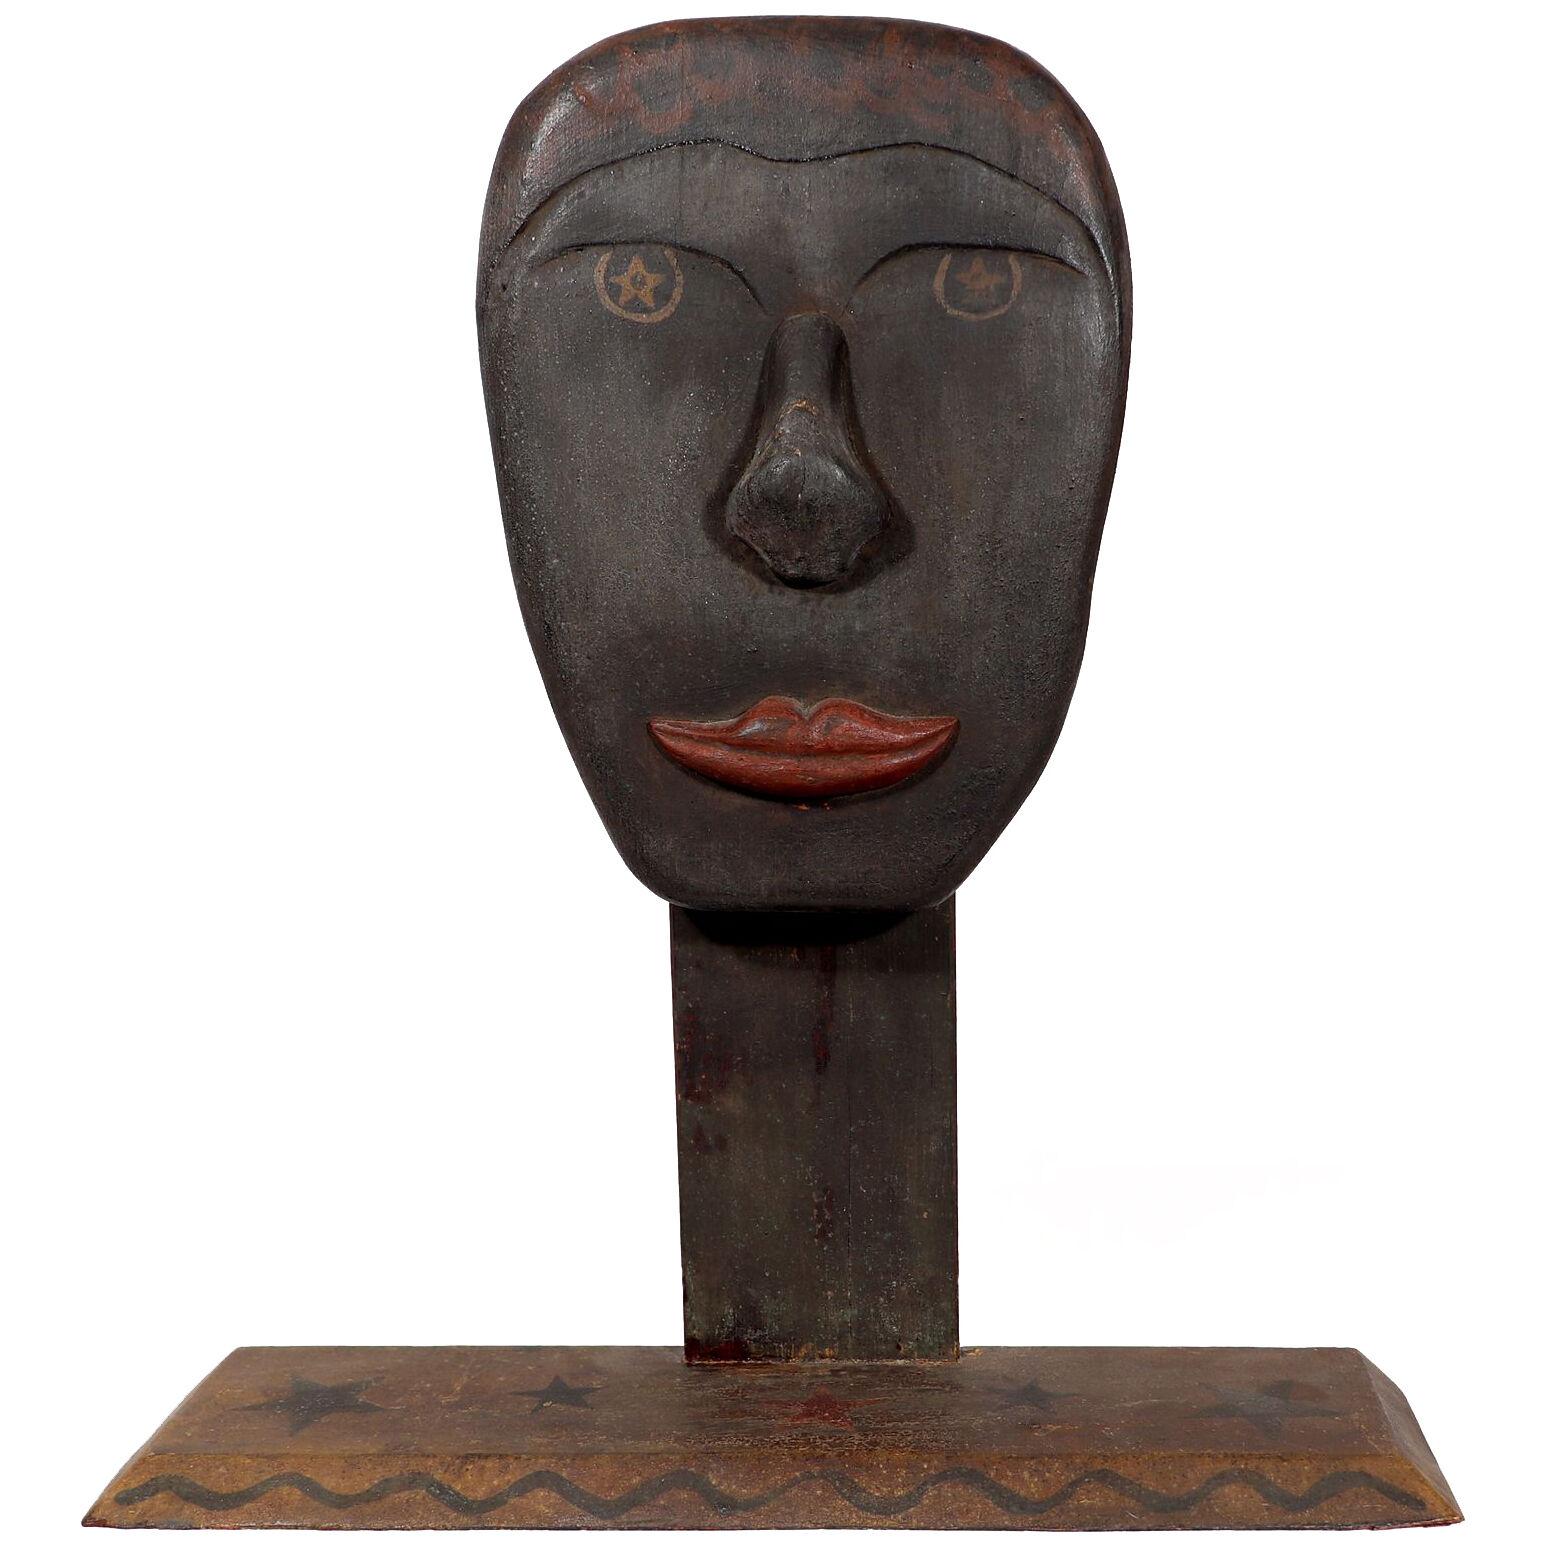 American Folk Art Sculpture of An African American Man's Head, Circa 1900